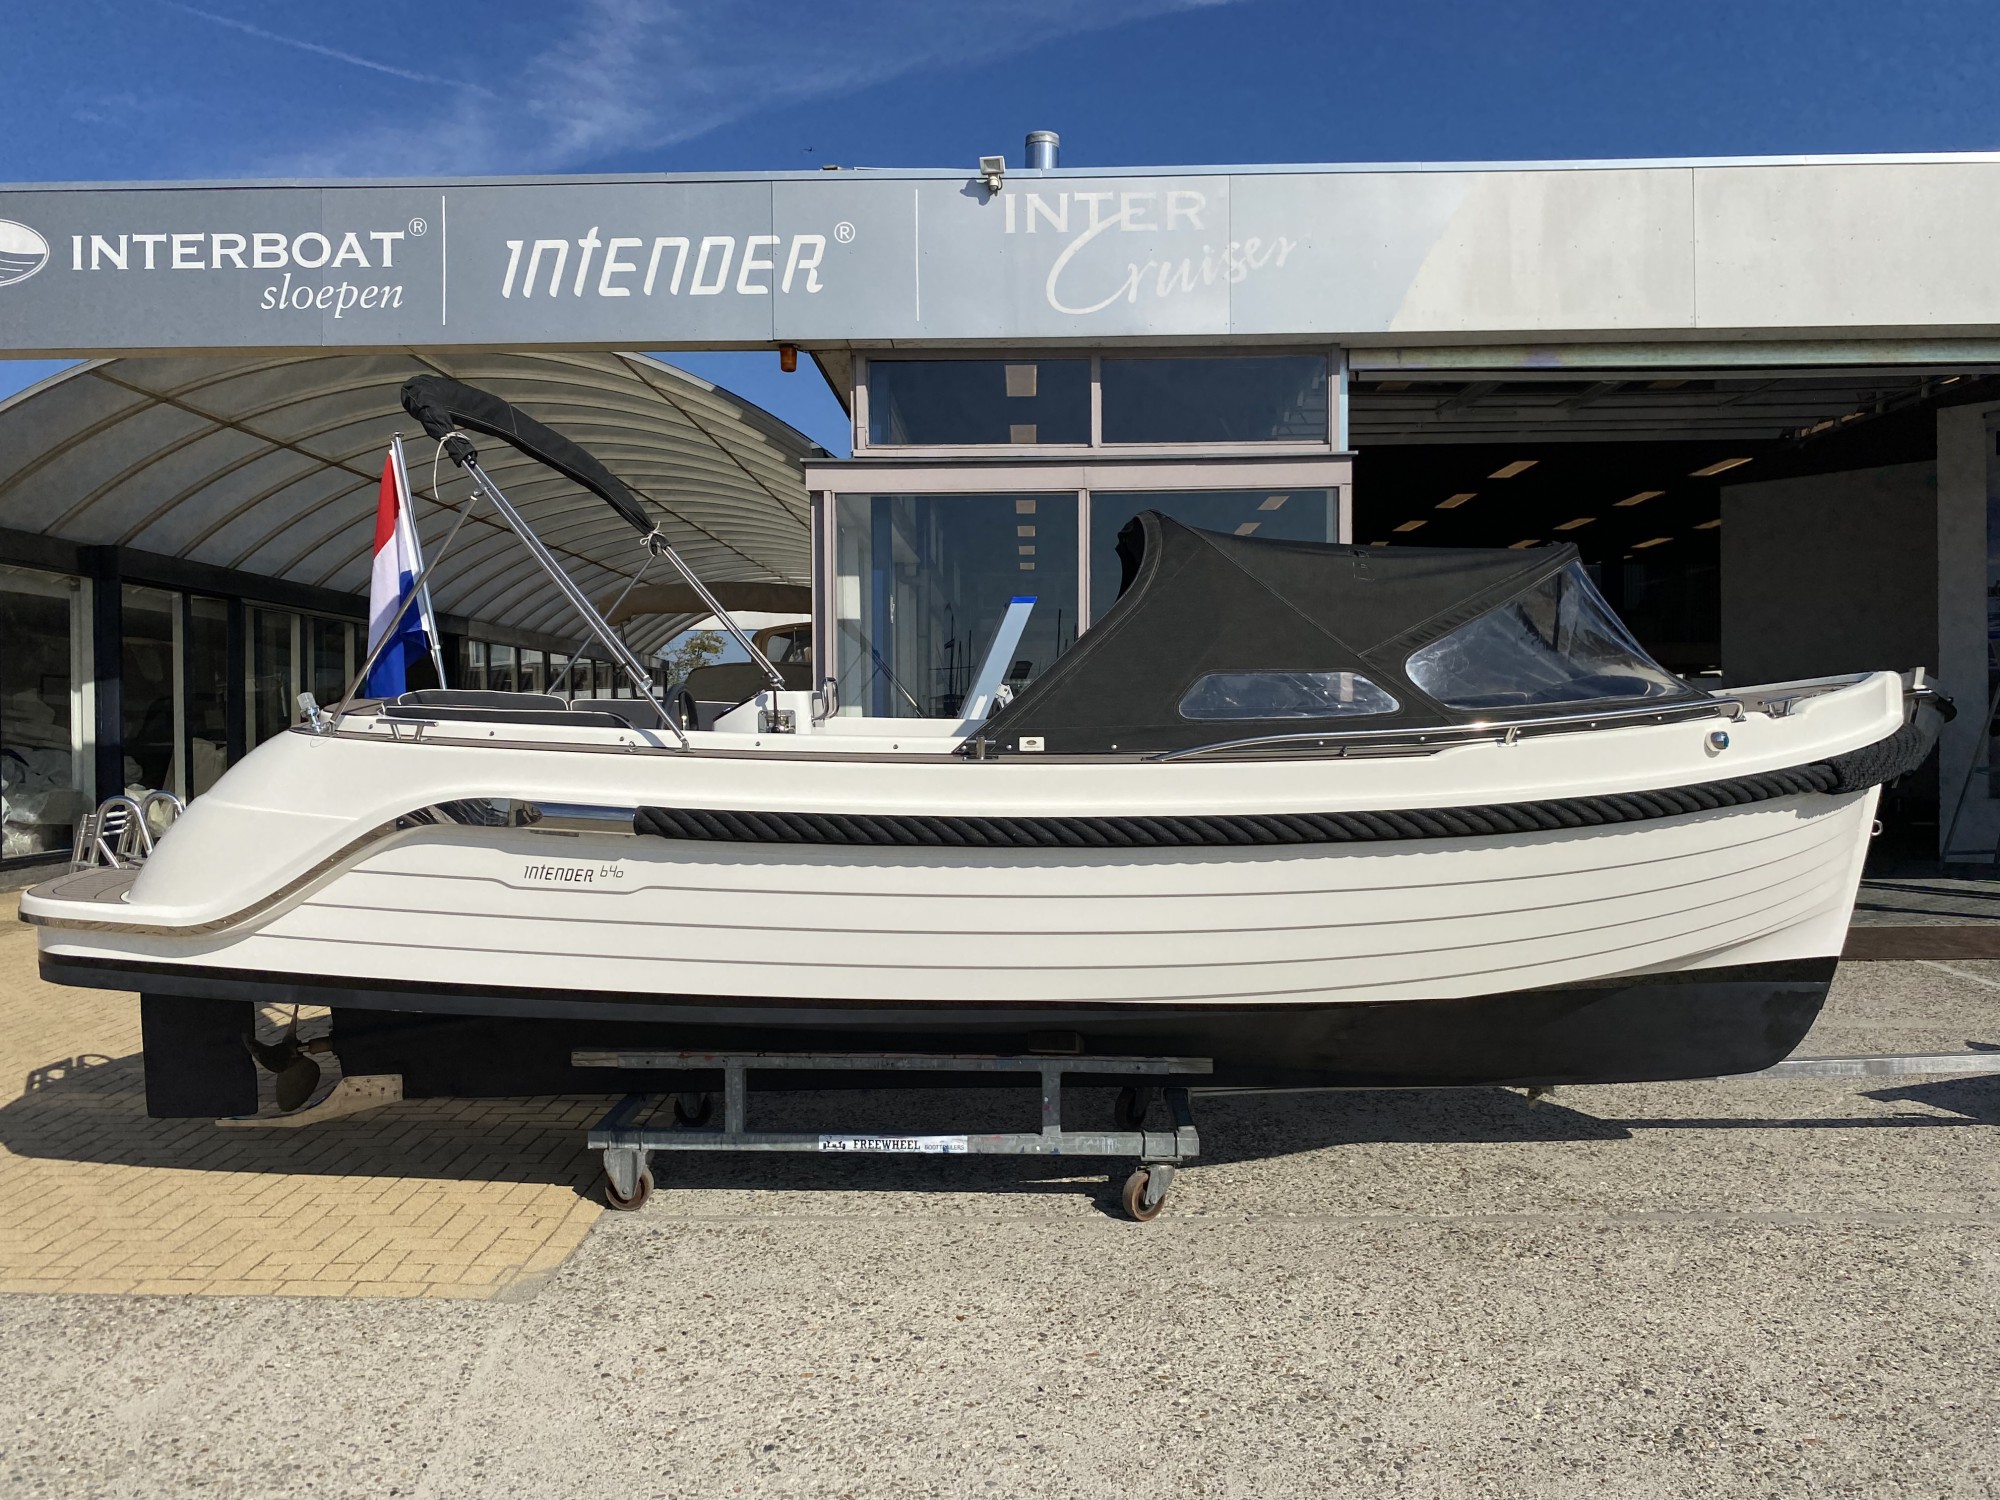 Interboat Intender 640 2012